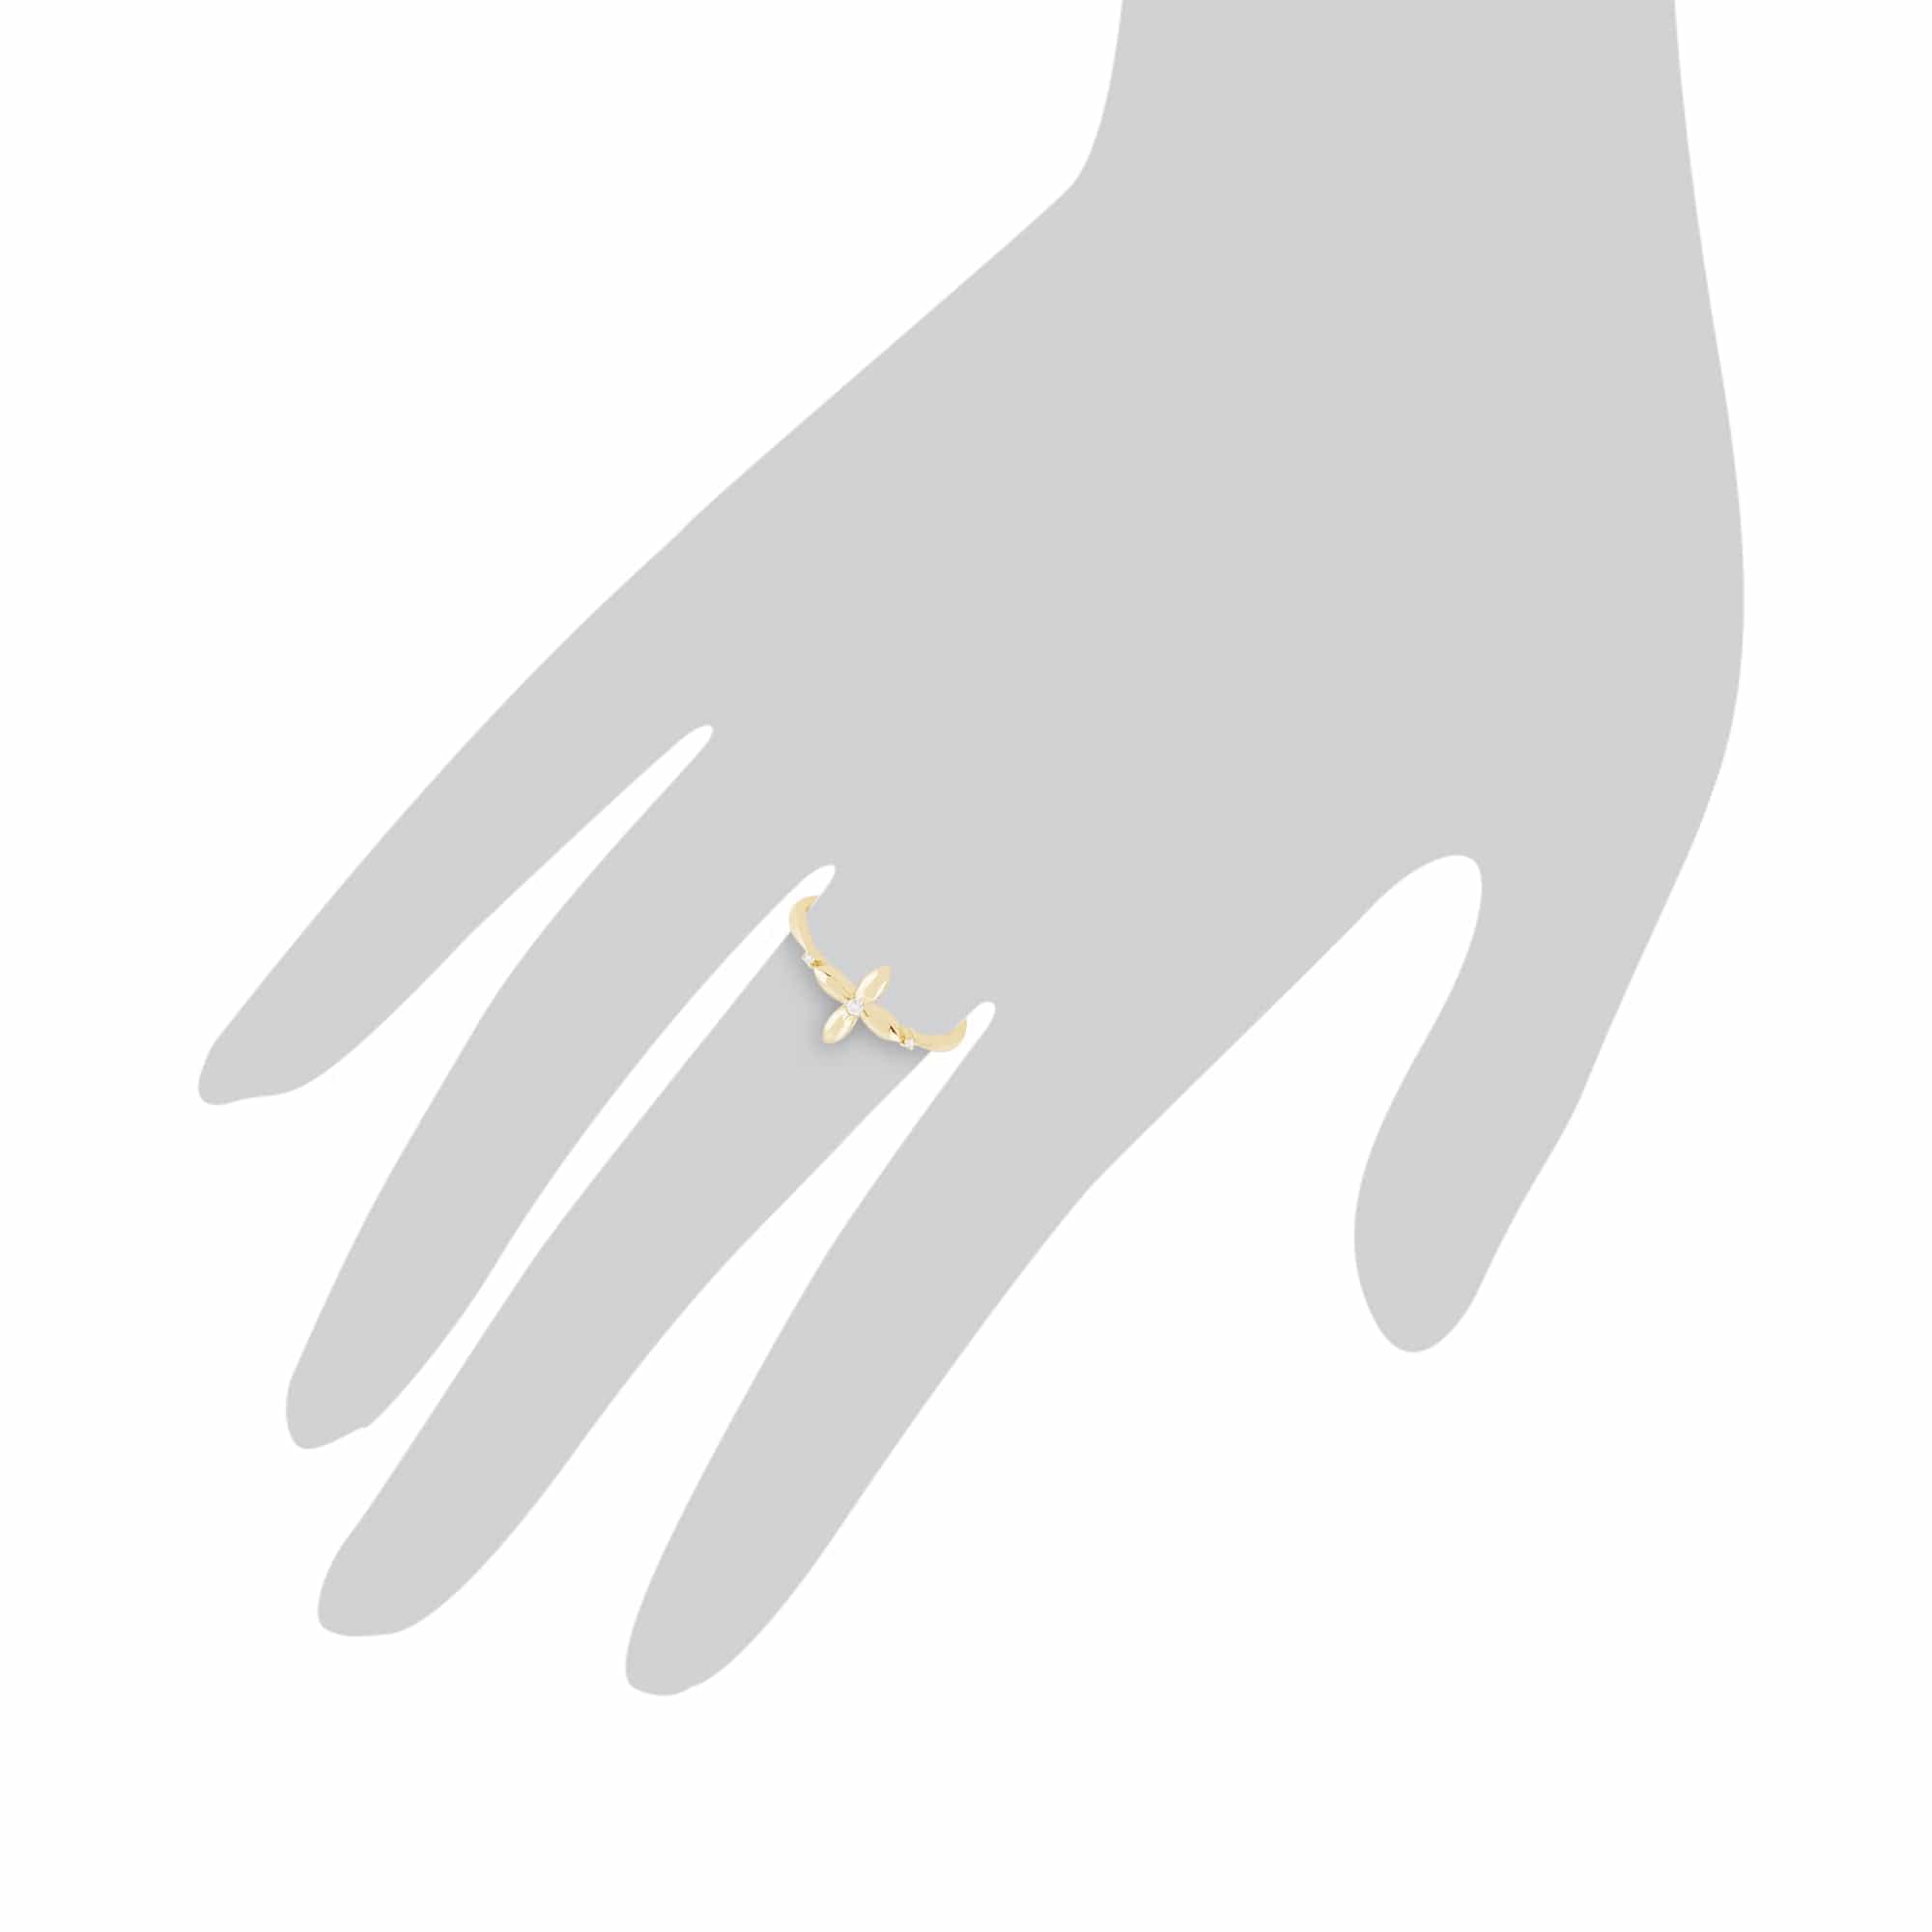 Gemondo 9ct Yellow Gold 0.02ct Diamond Ixora Flower Ring Image 3